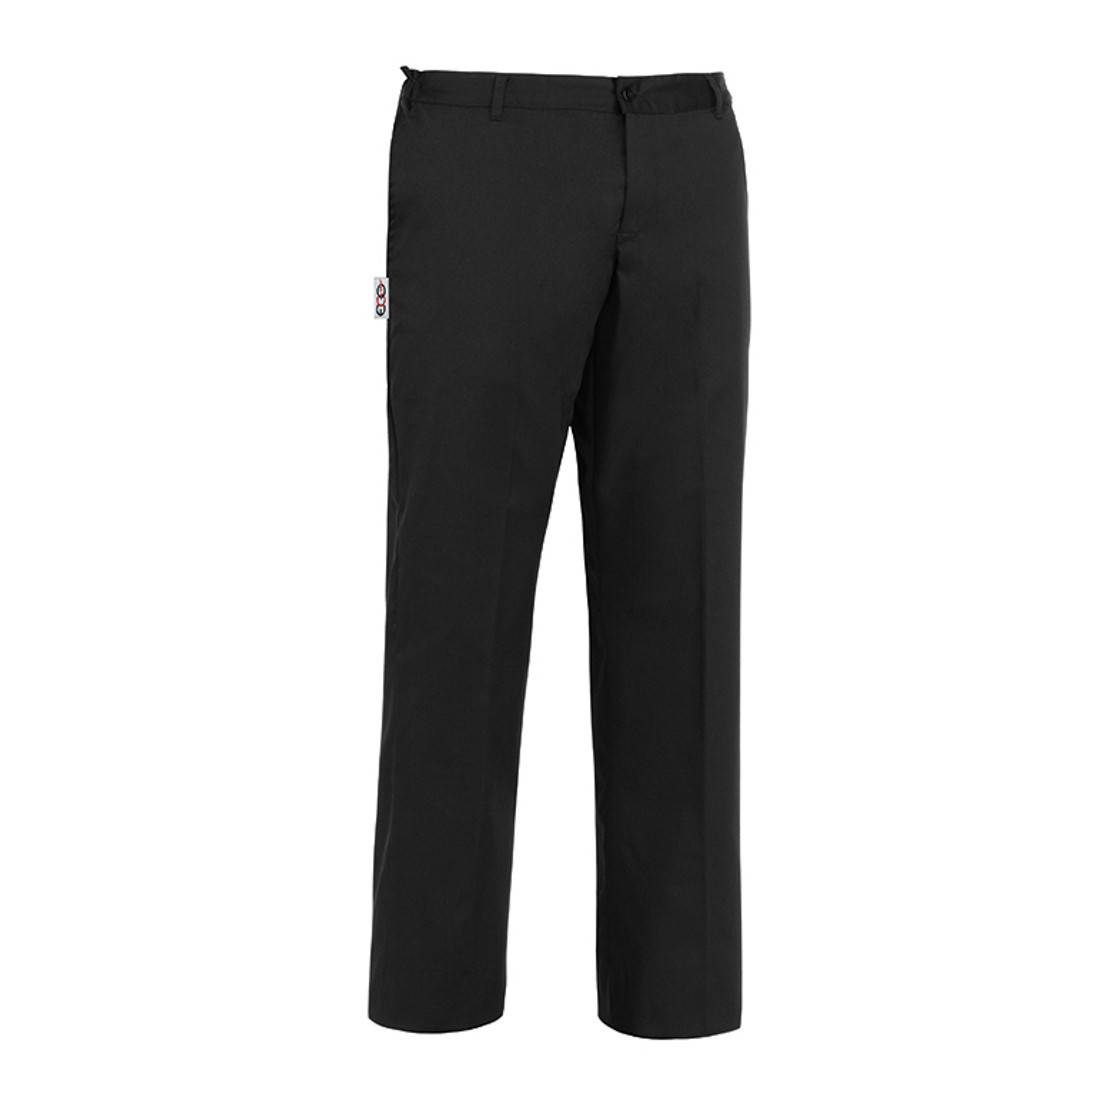 Pantalon Evo, 65% polyester/35% coton - Les vêtements de protection